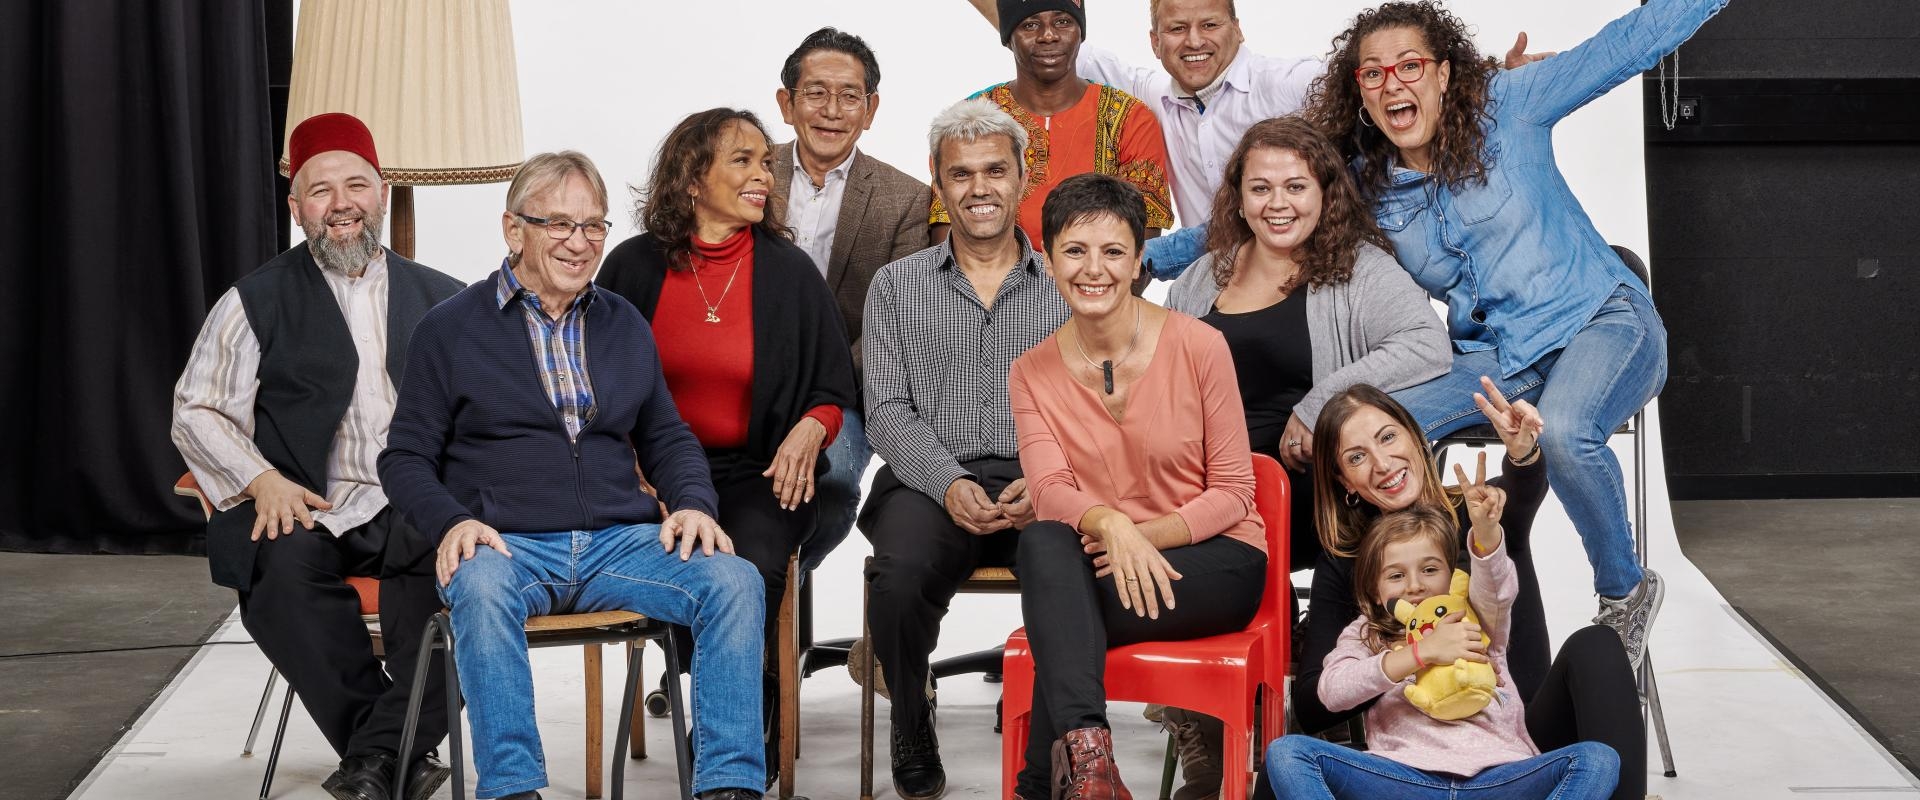 Fröhliche multikulturelle Gruppe posiert in einem Fotostudio vor einer weißen Leinwand